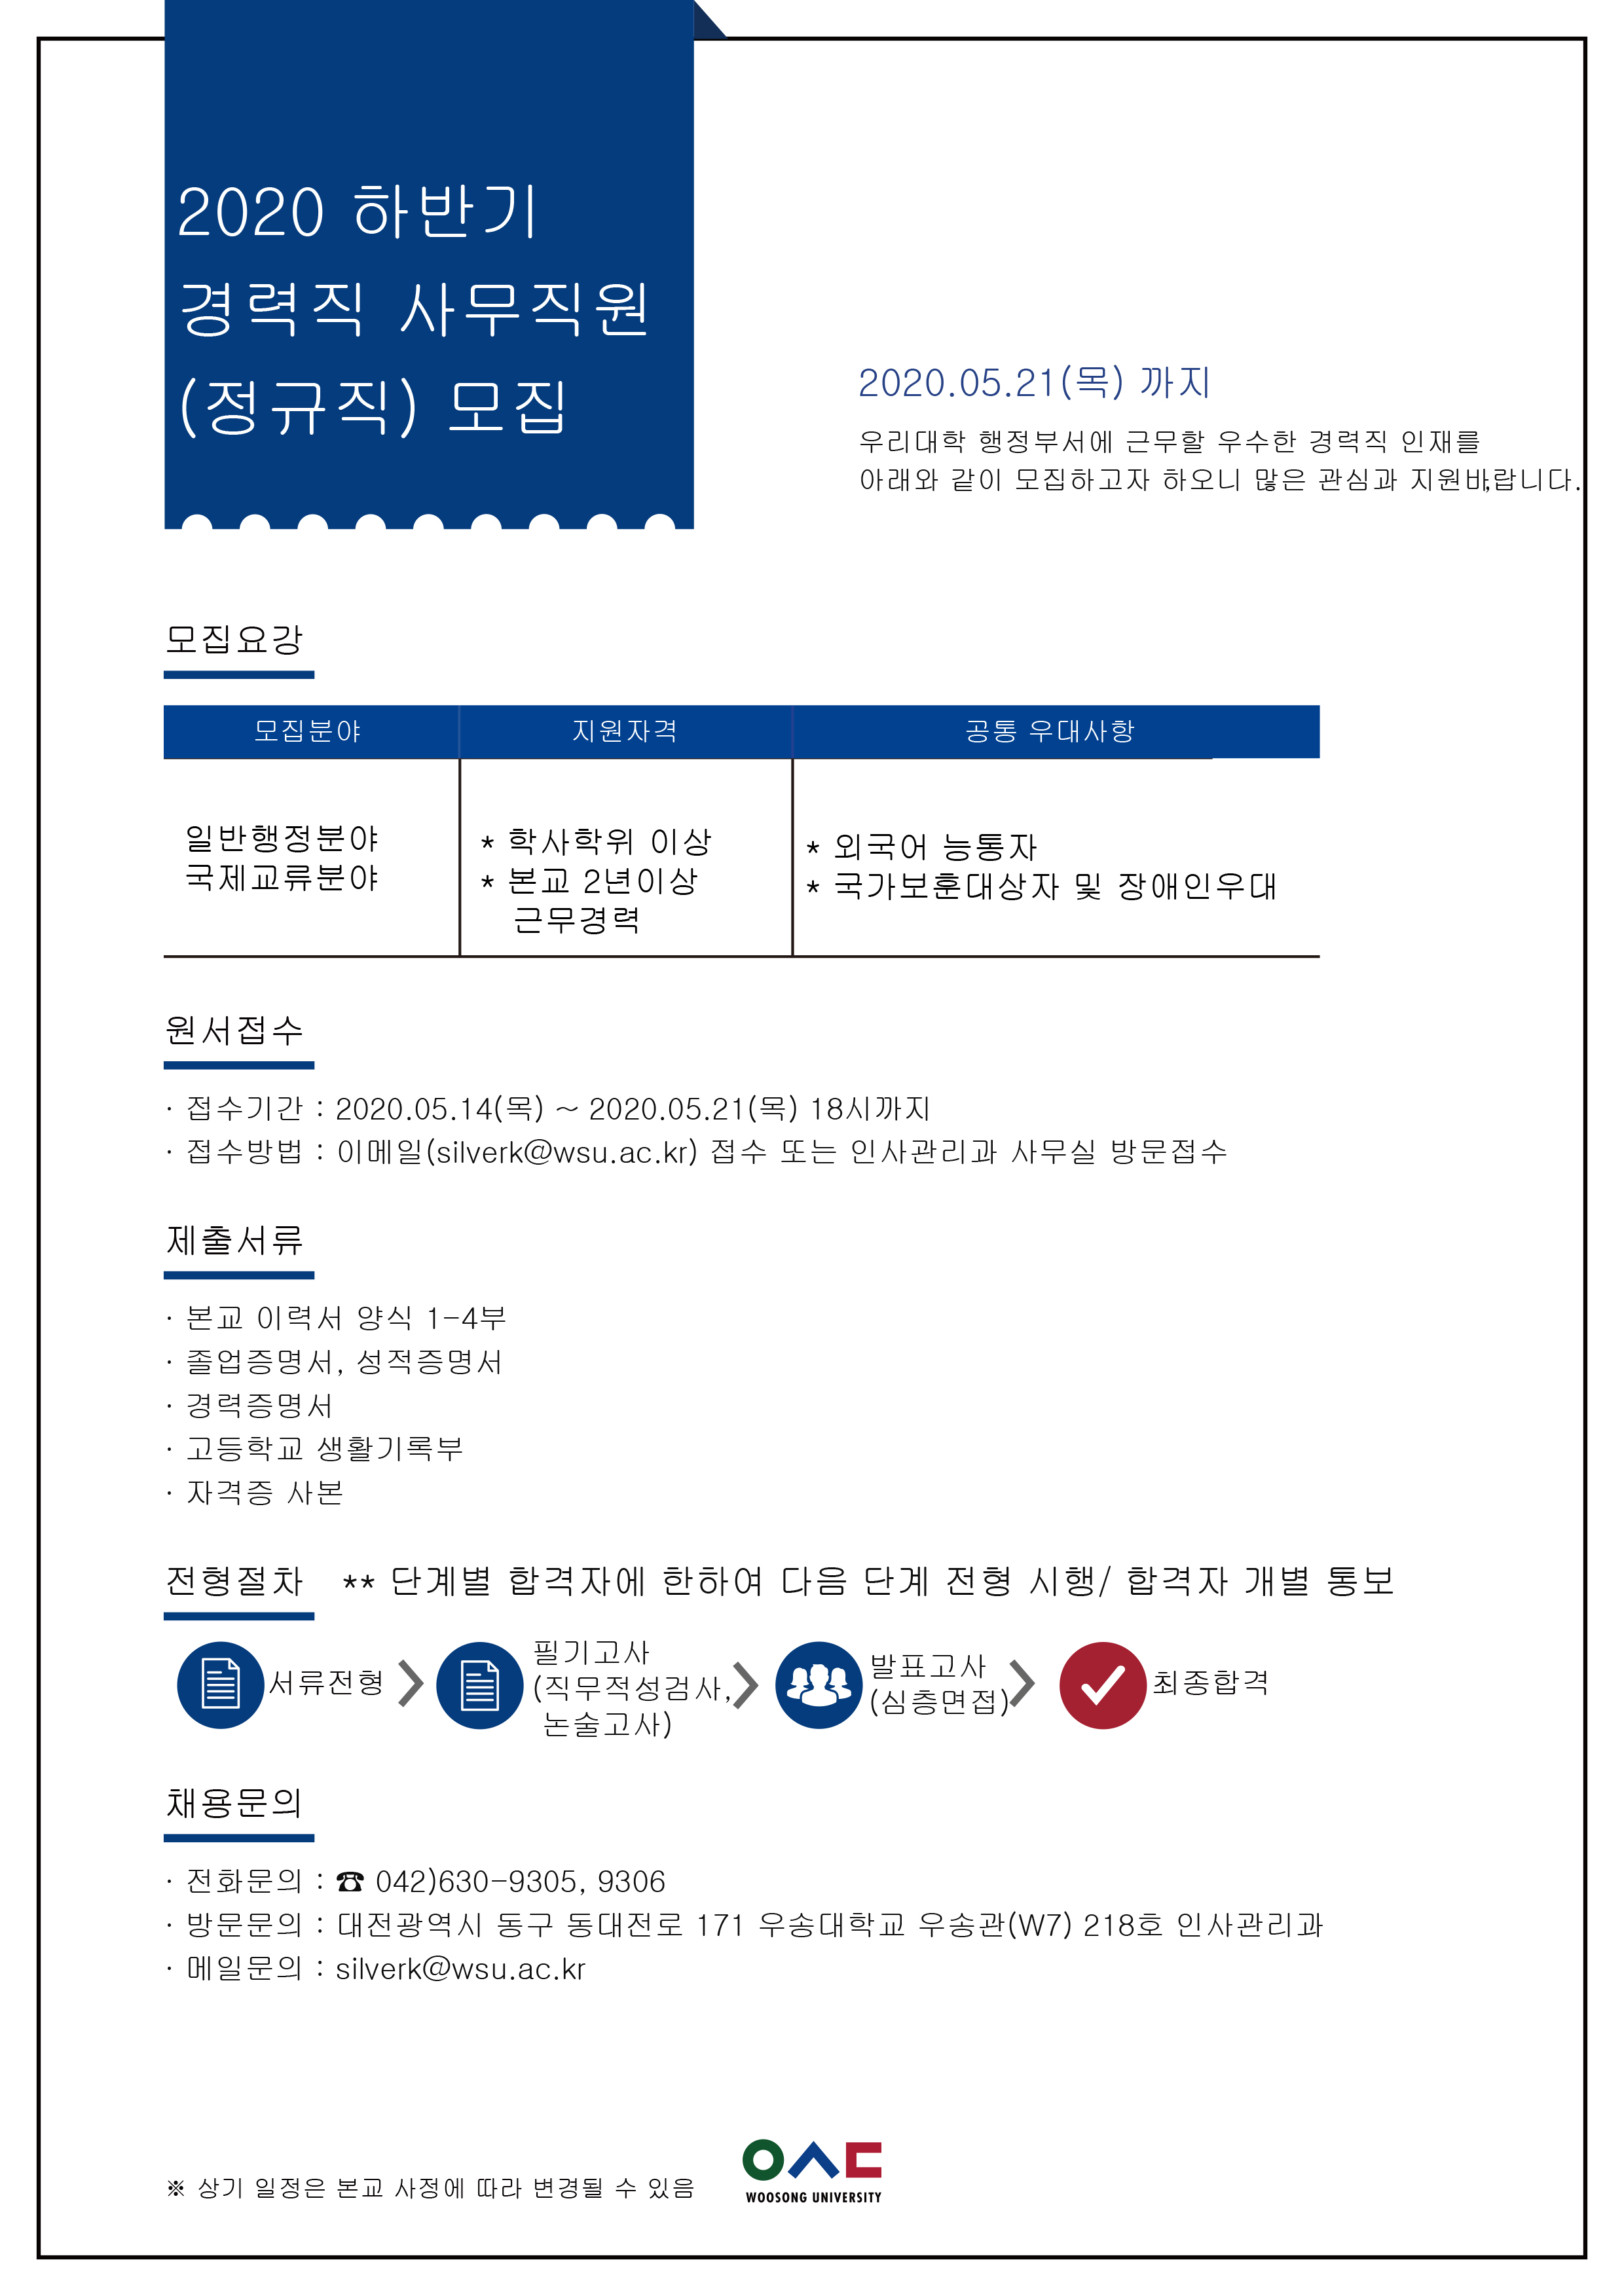 2020년 하반기 경력직 사무직원 채용 안내(5월 21일 마감)